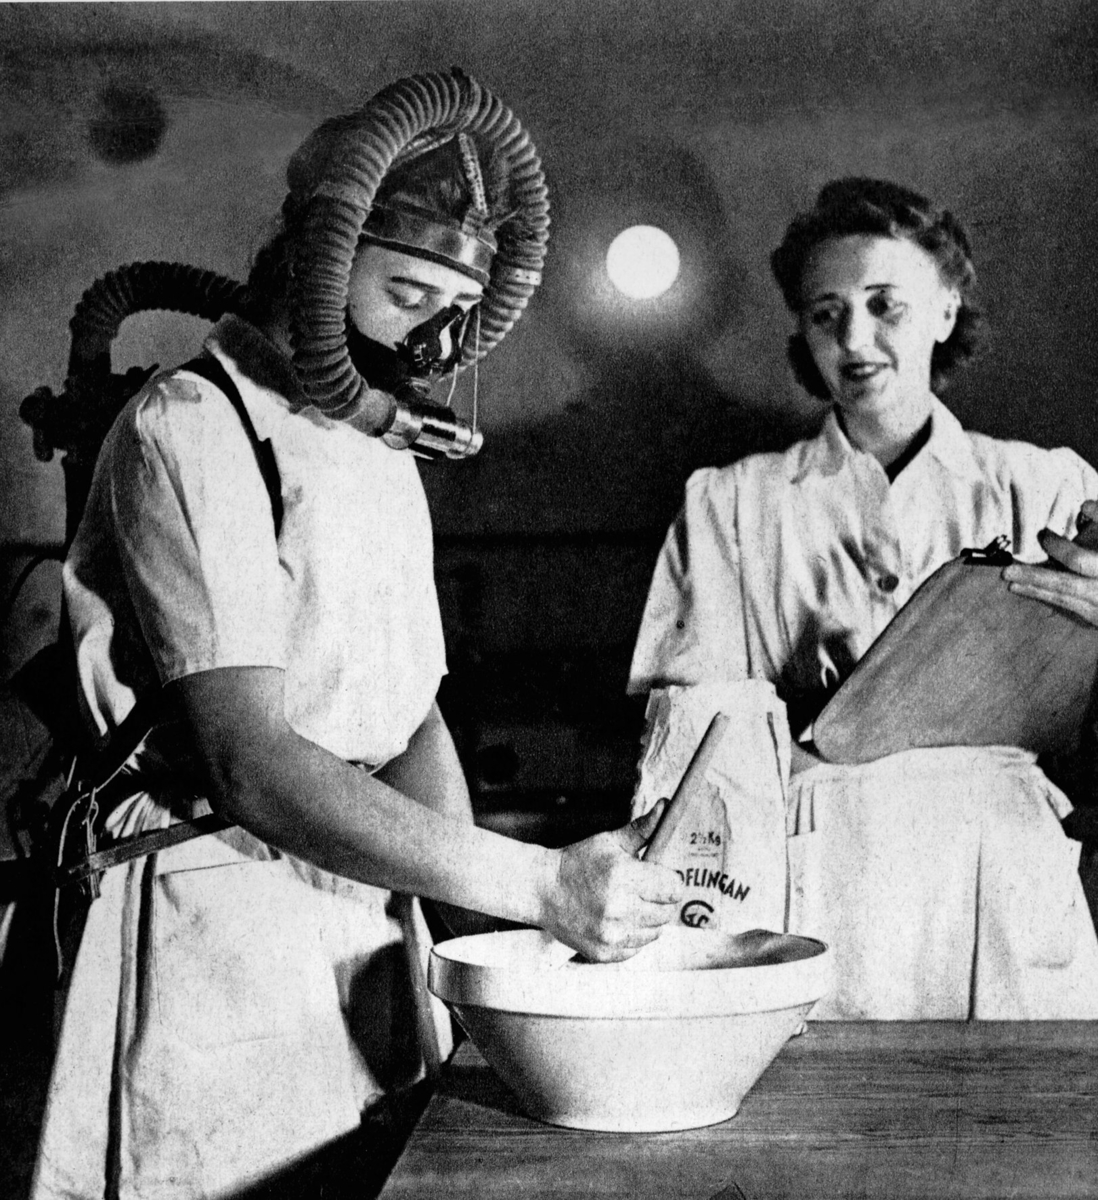 Bo bättre-utställningen 1945
Interiör. Kvinna med mask vid bytta, samt kvinna bredvid som mäter. Bo bättre-utställningen 1945, Bostadsvaneundersökning.